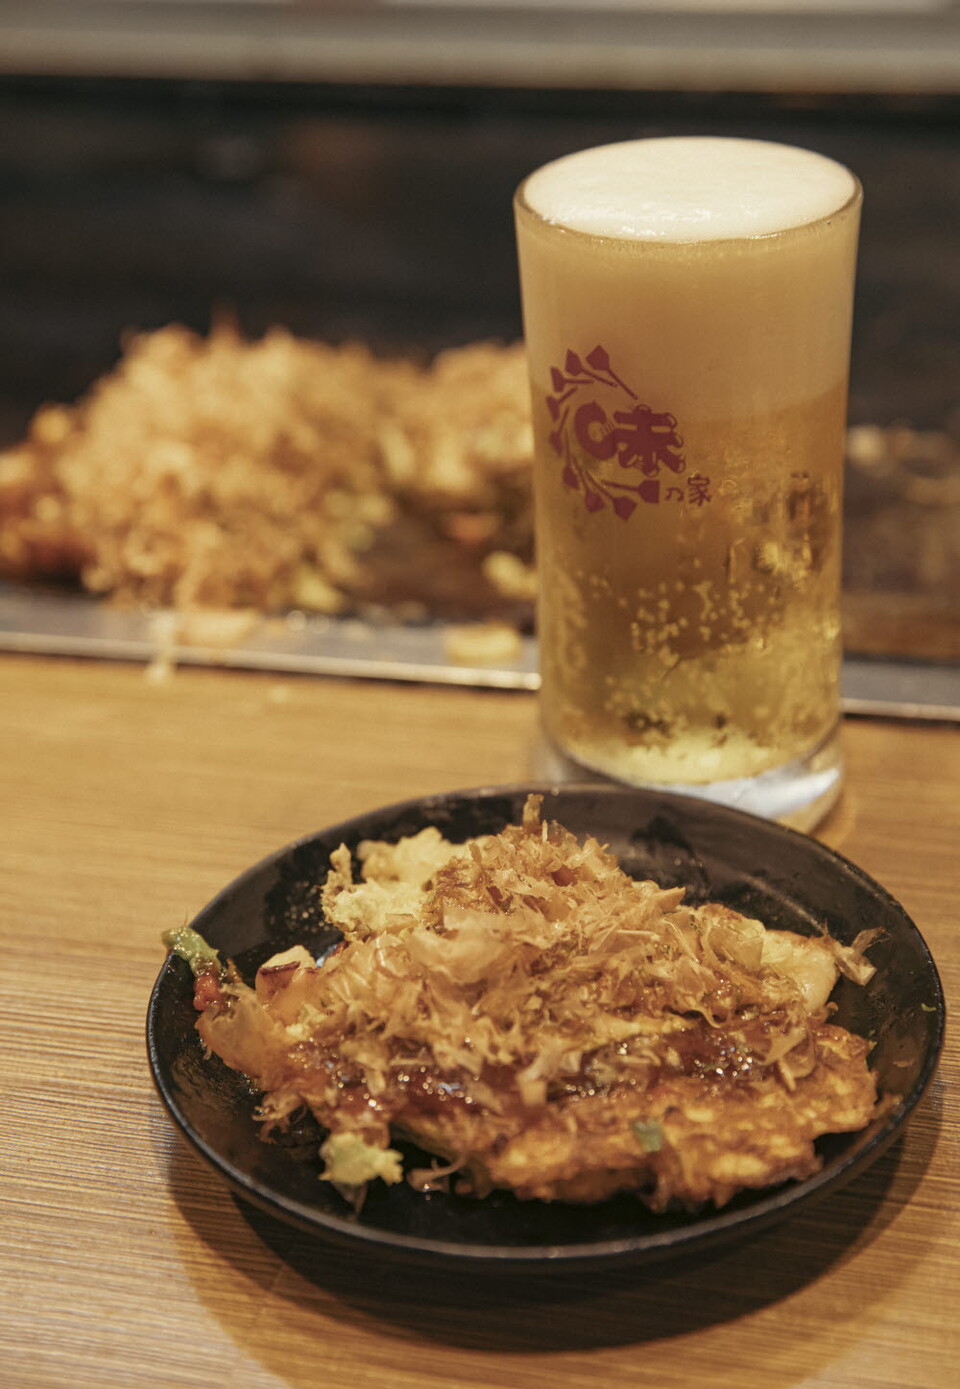  오코노미야끼와 생맥주 조합은 오사카 여행에서 절대 빠트릴 수 없는 맛이다